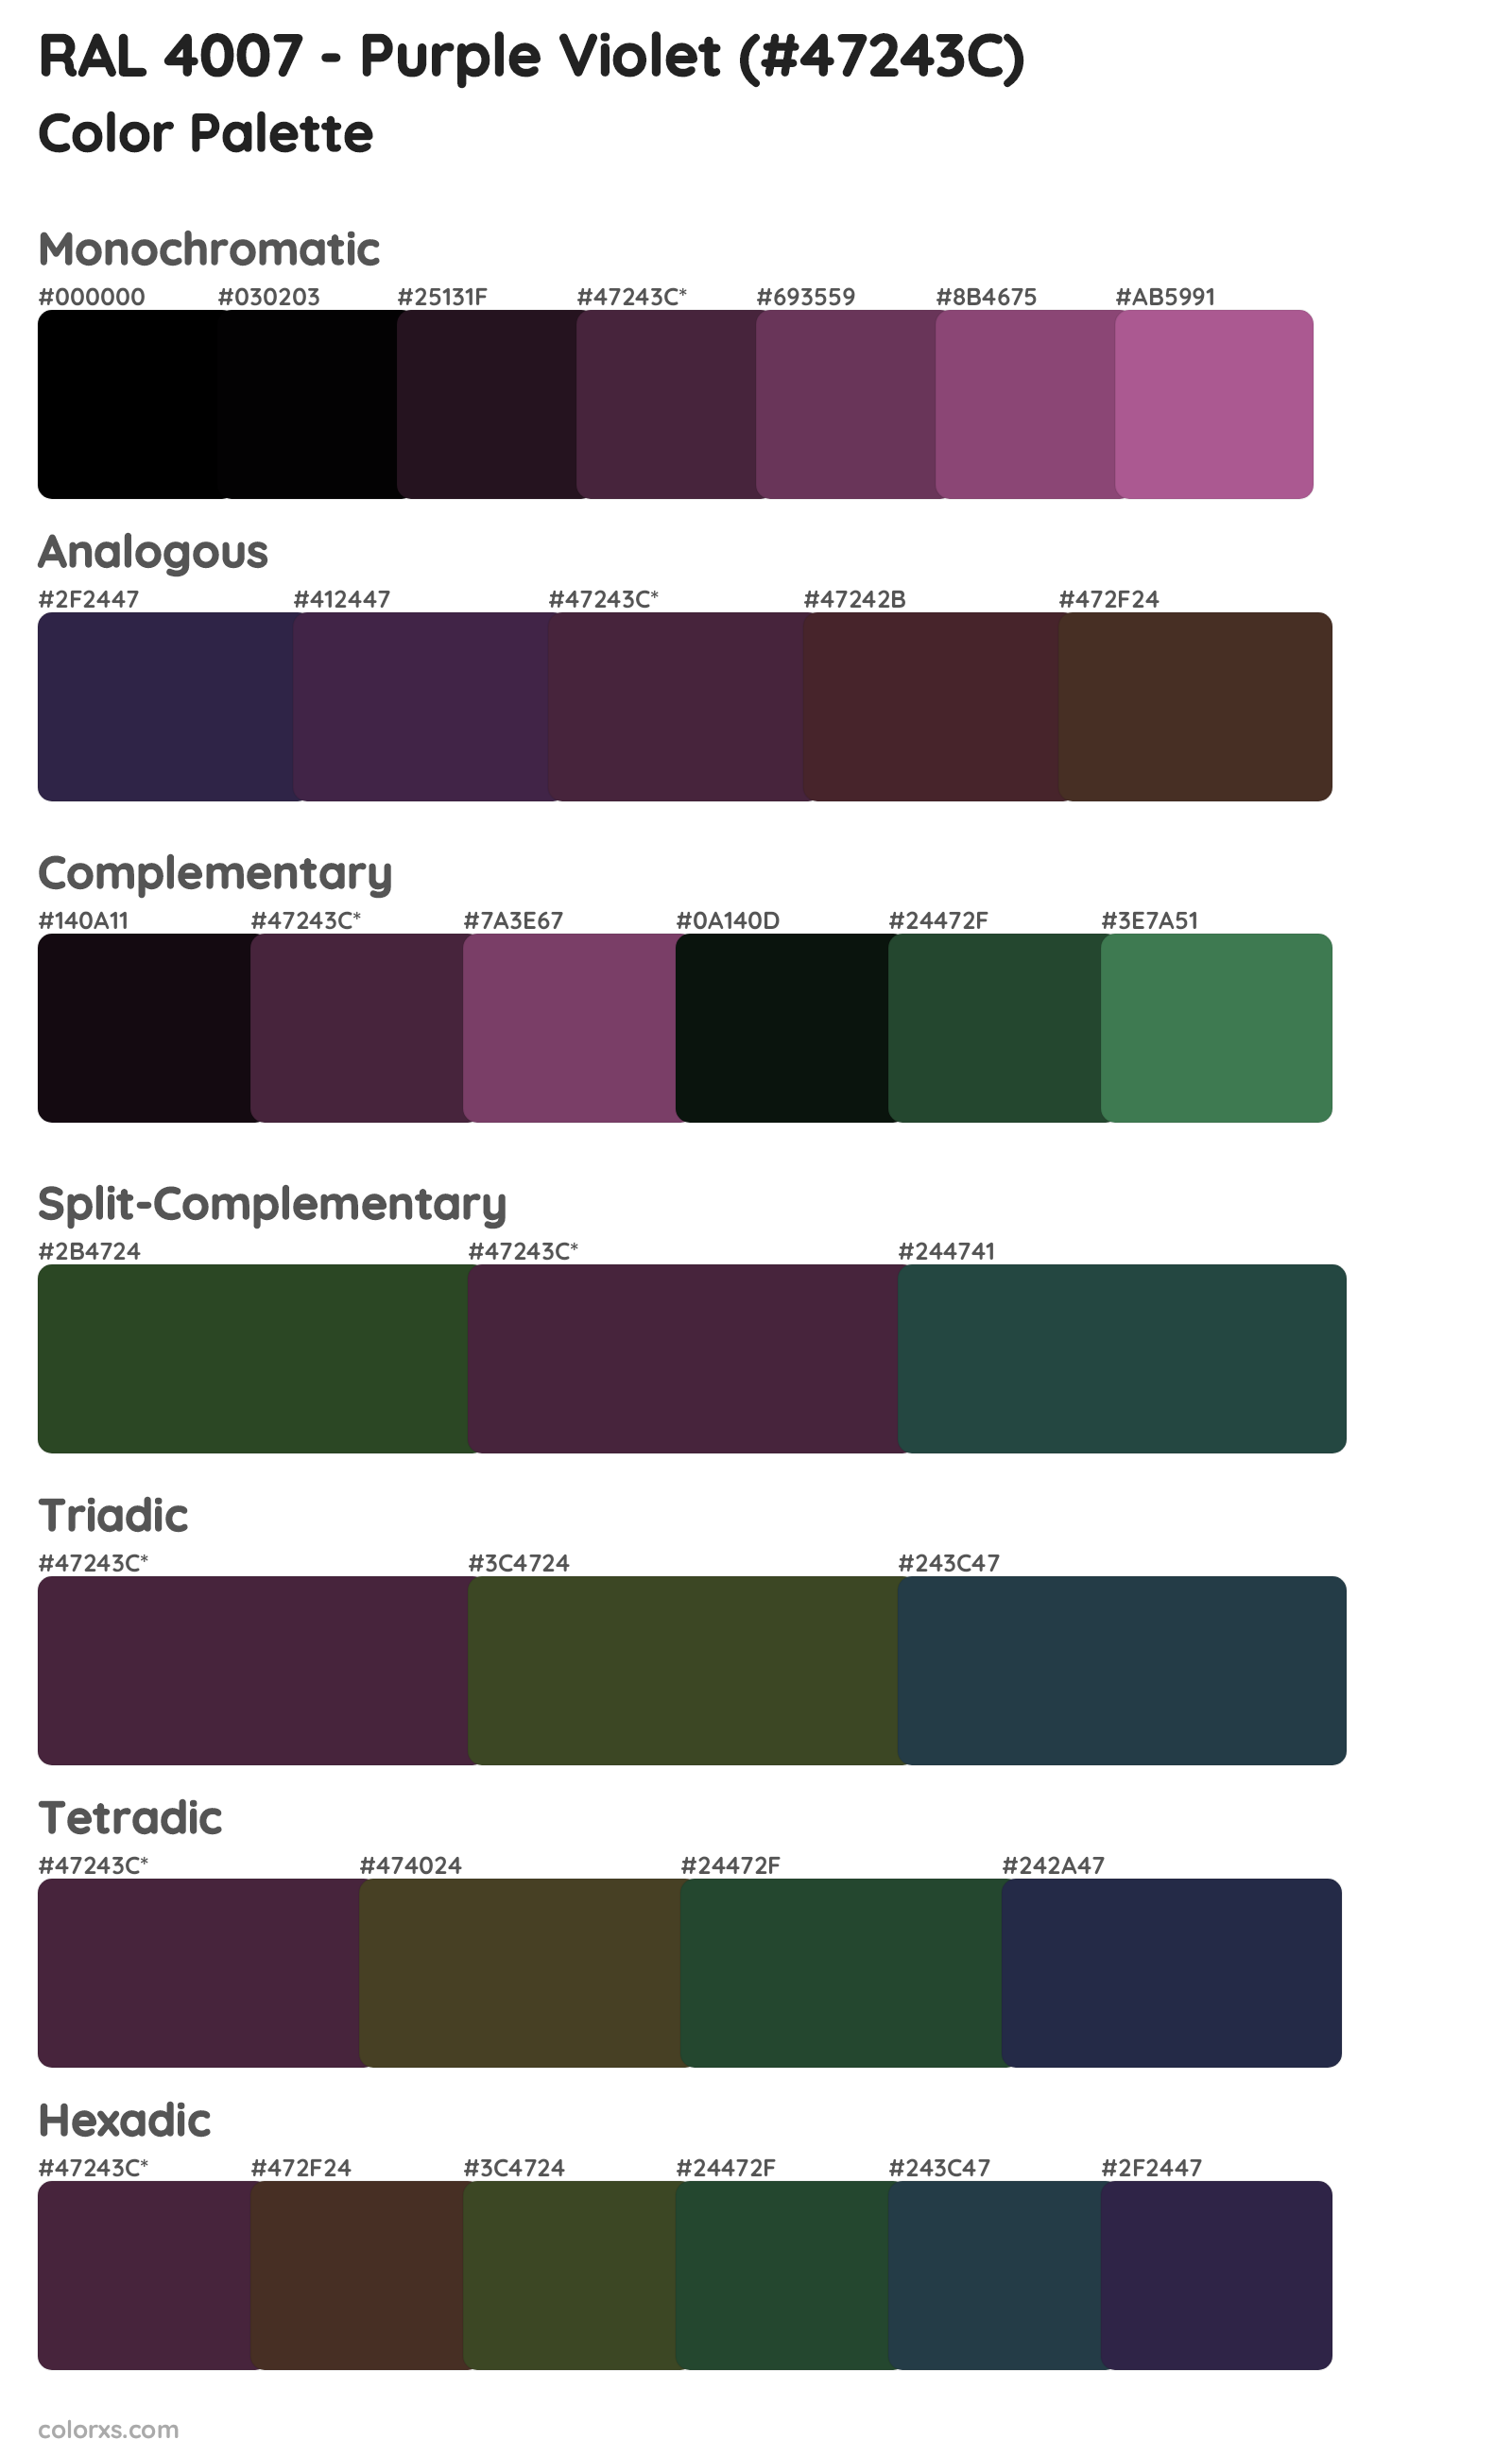 RAL 4007 - Purple Violet Color Scheme Palettes